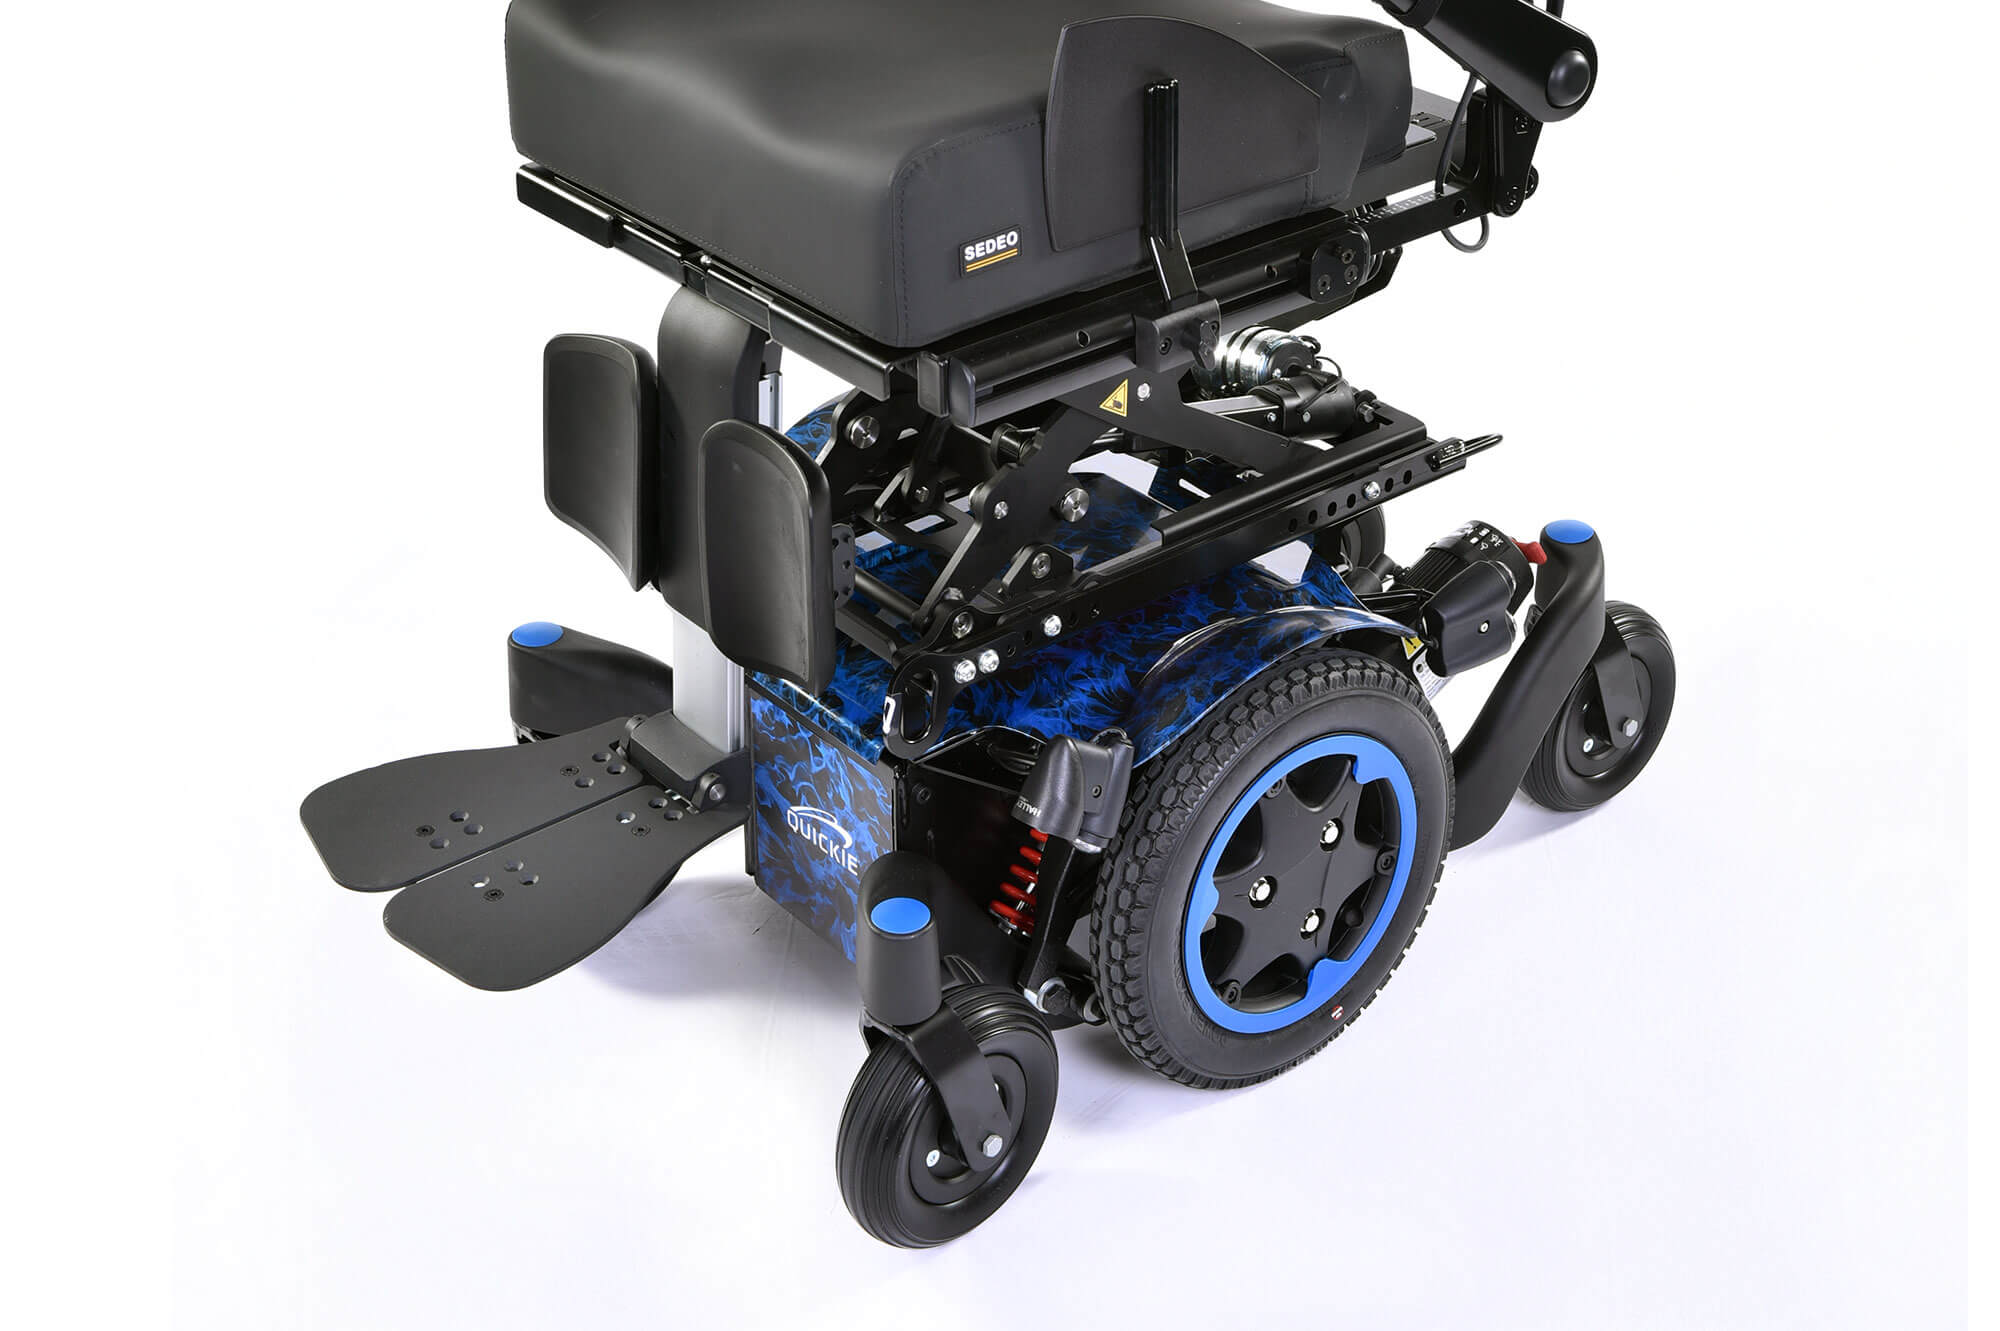 Quickie Salsa M Mini Q300 Power Chair Wheelchair Mid-Wheel Sunrise Medical